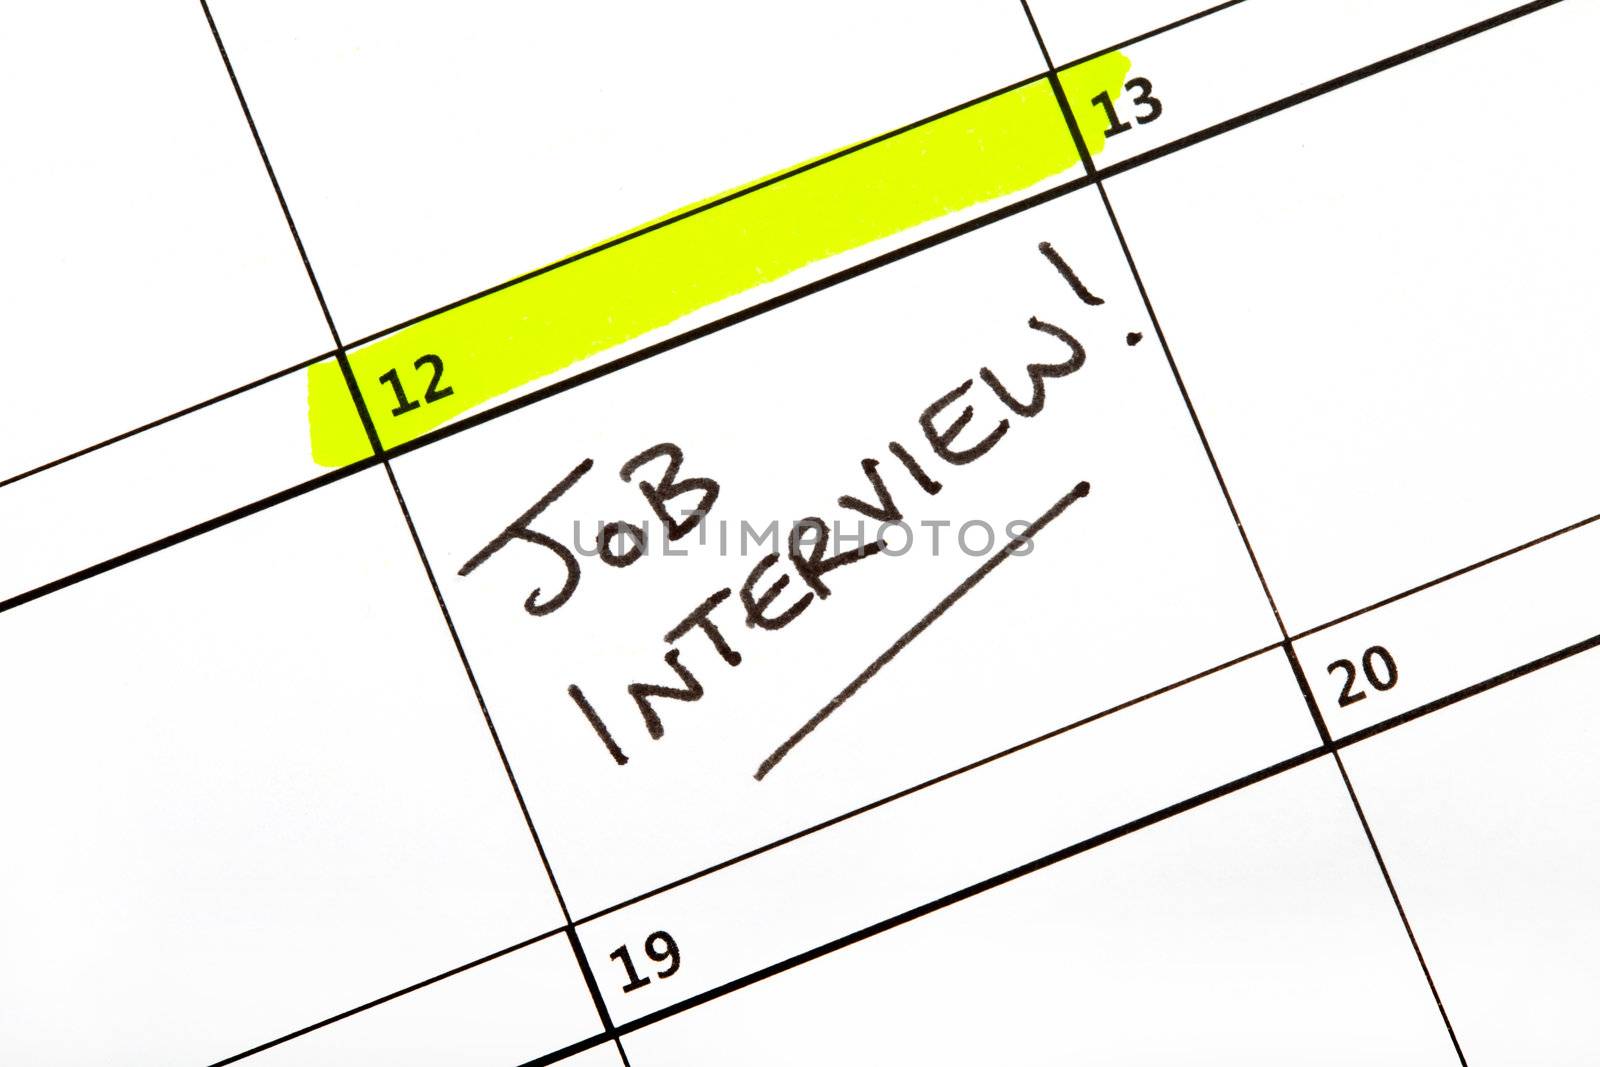 Job Interview Date on a Calendar by chrisdorney